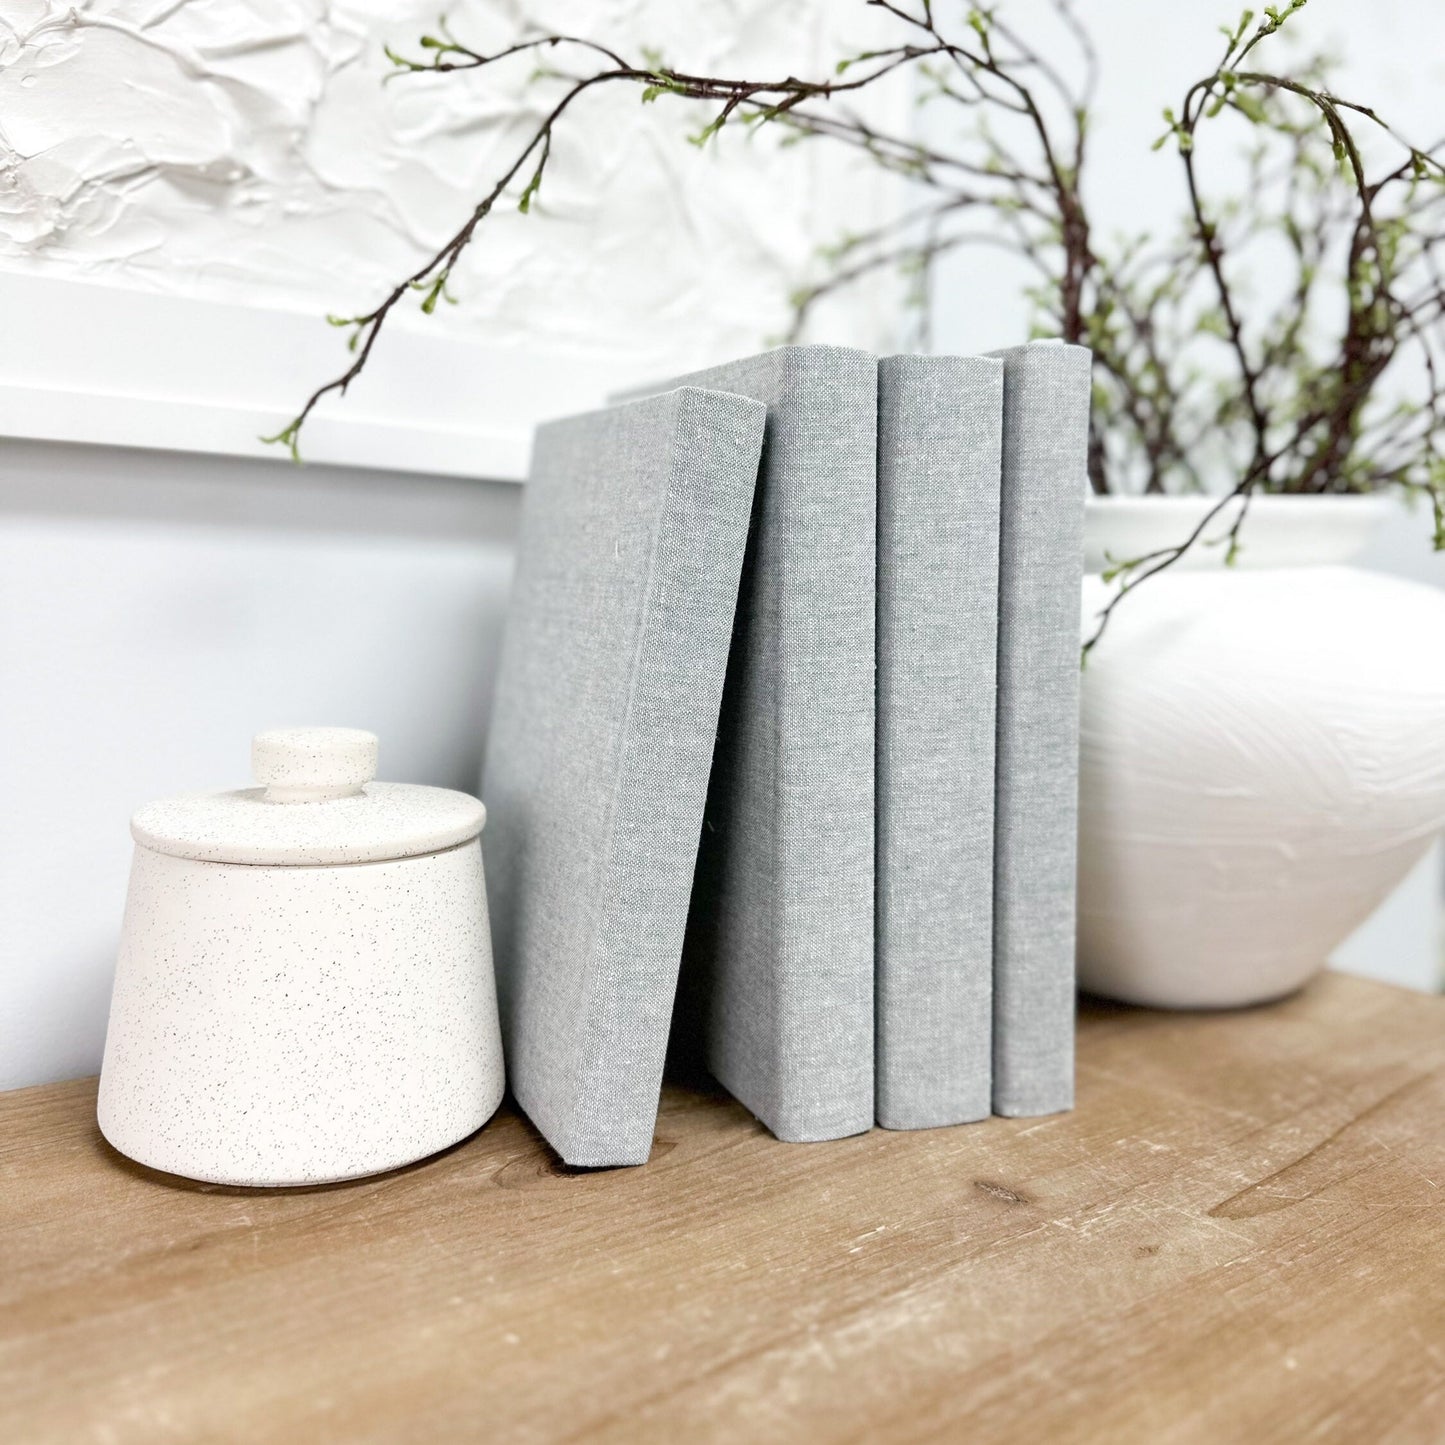 Light Gray Decorative Books for Home Decor